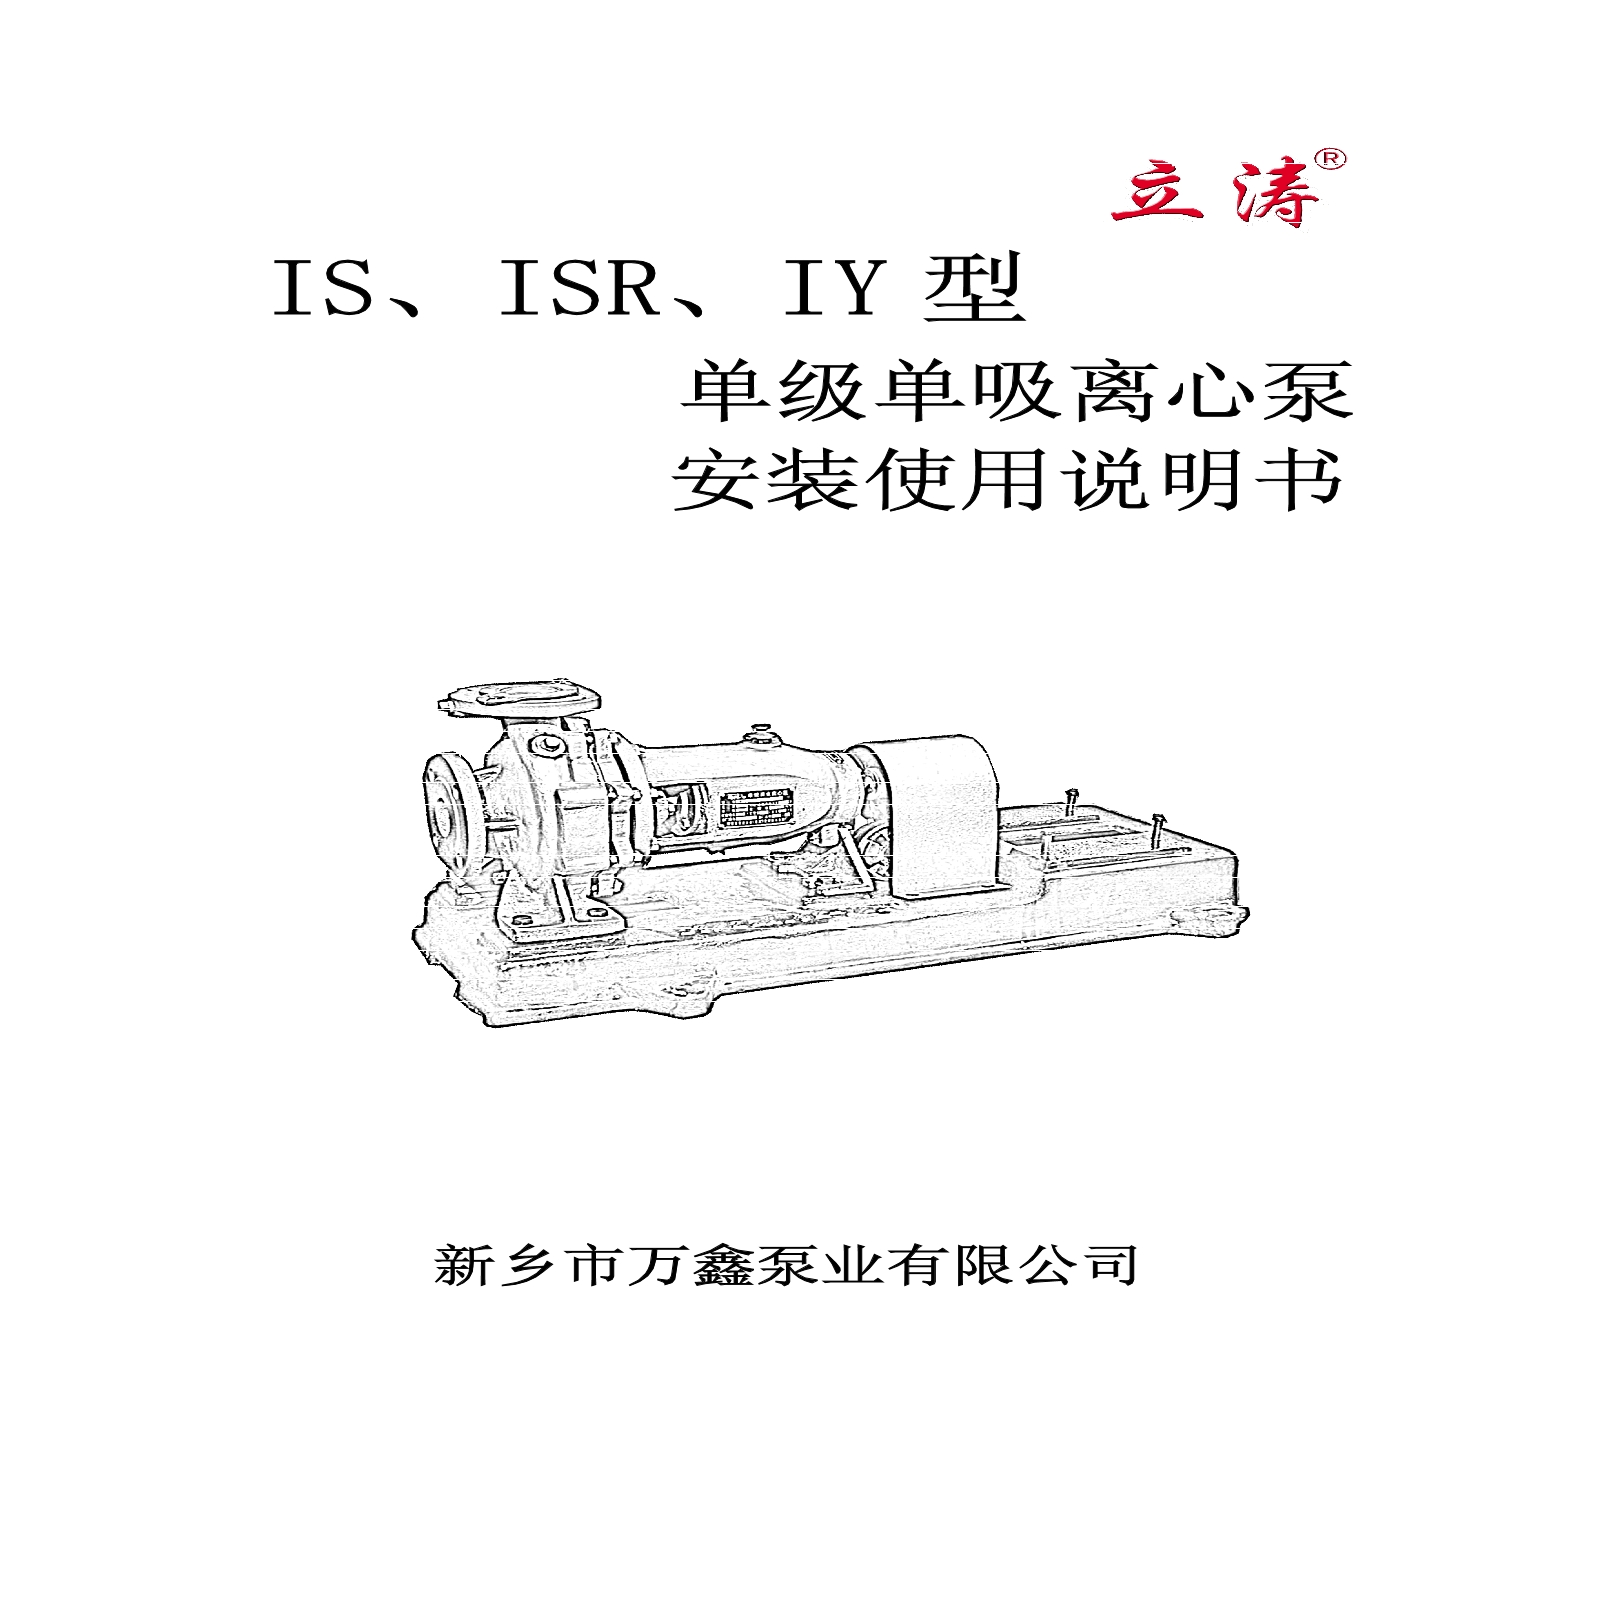 IS、ISR、ISY型泵安装使用说明书